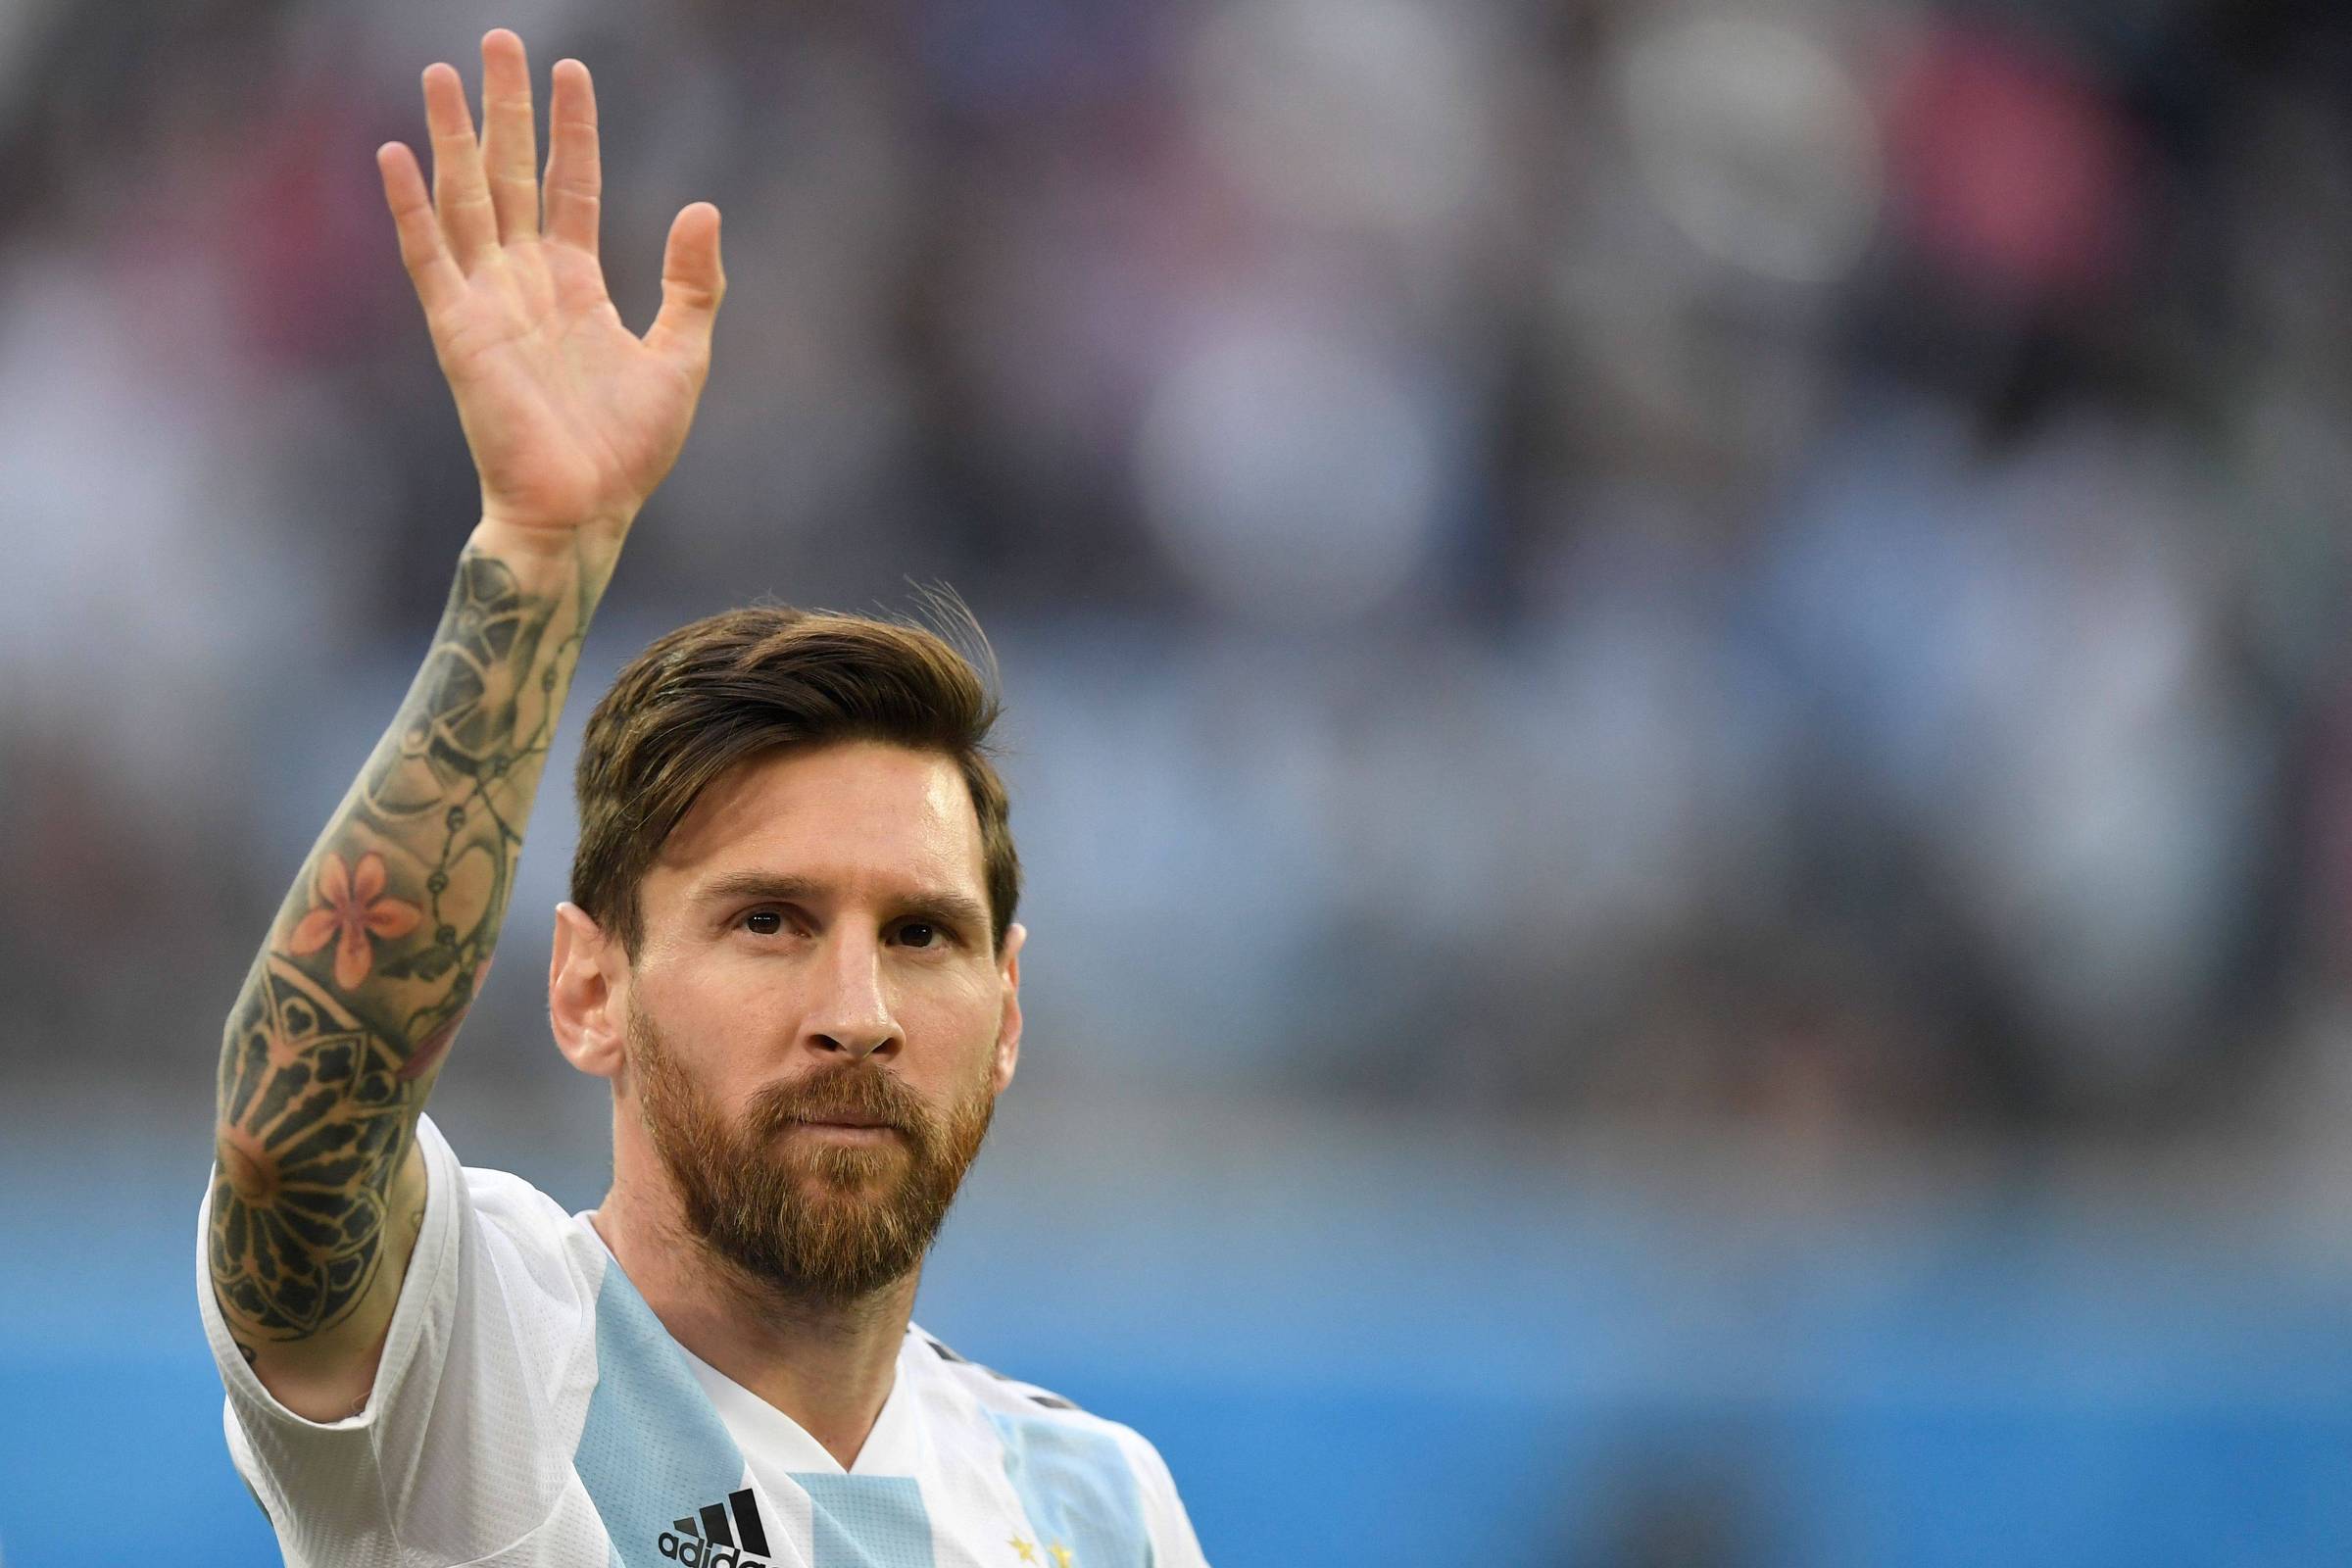 Messi após fechar época com derrota: Ficamos com as coisas boas